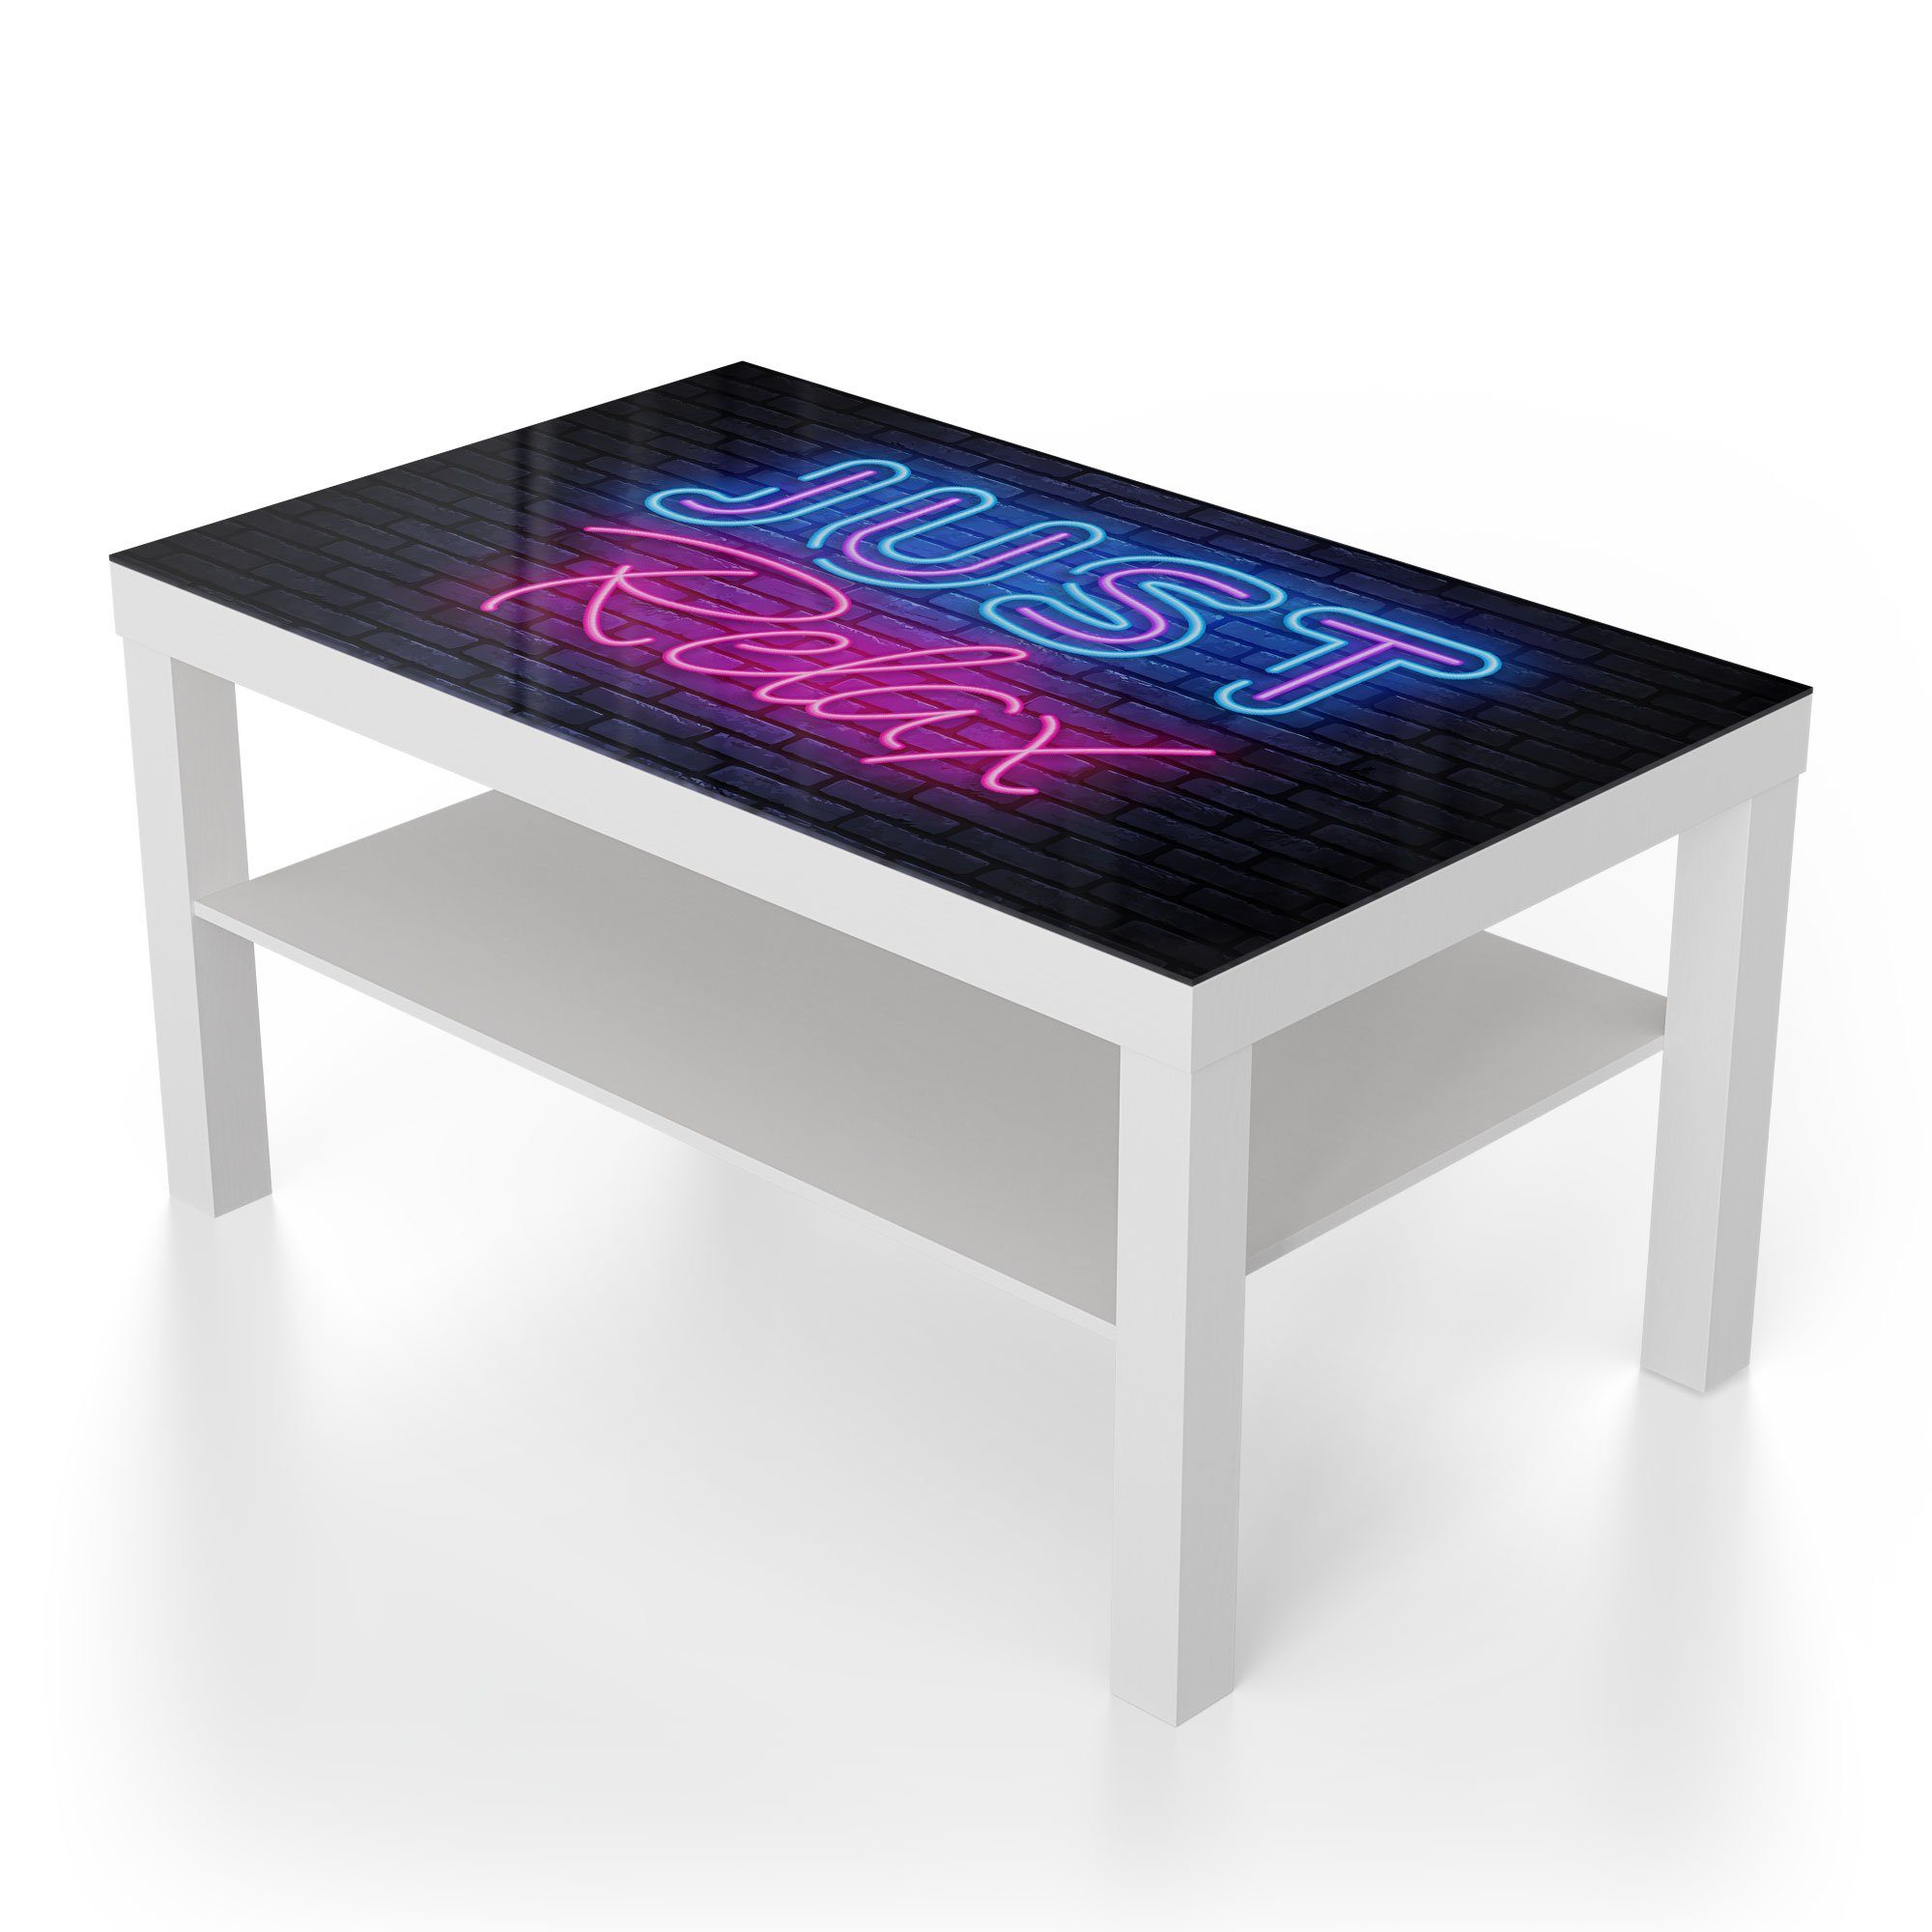 Glas DEQORI Neon-Design', modern Beistelltisch 'Spruch Weiß Glastisch im Couchtisch